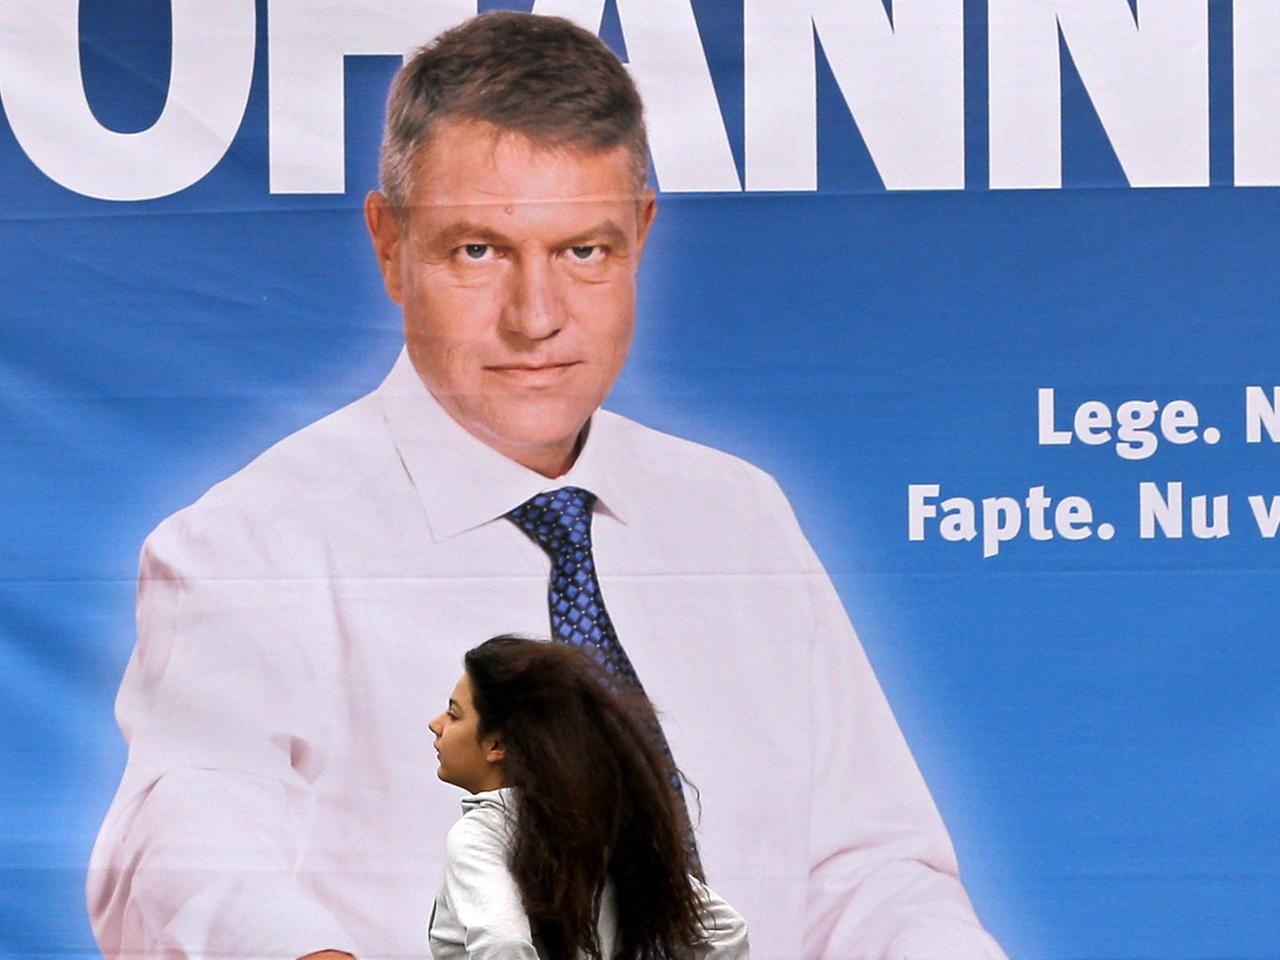 Eine Frau geht an einem Wahlplakat eines Kandidaten für die rumänische Präsientschaftswahl, Klaus Johannis, vorbei.